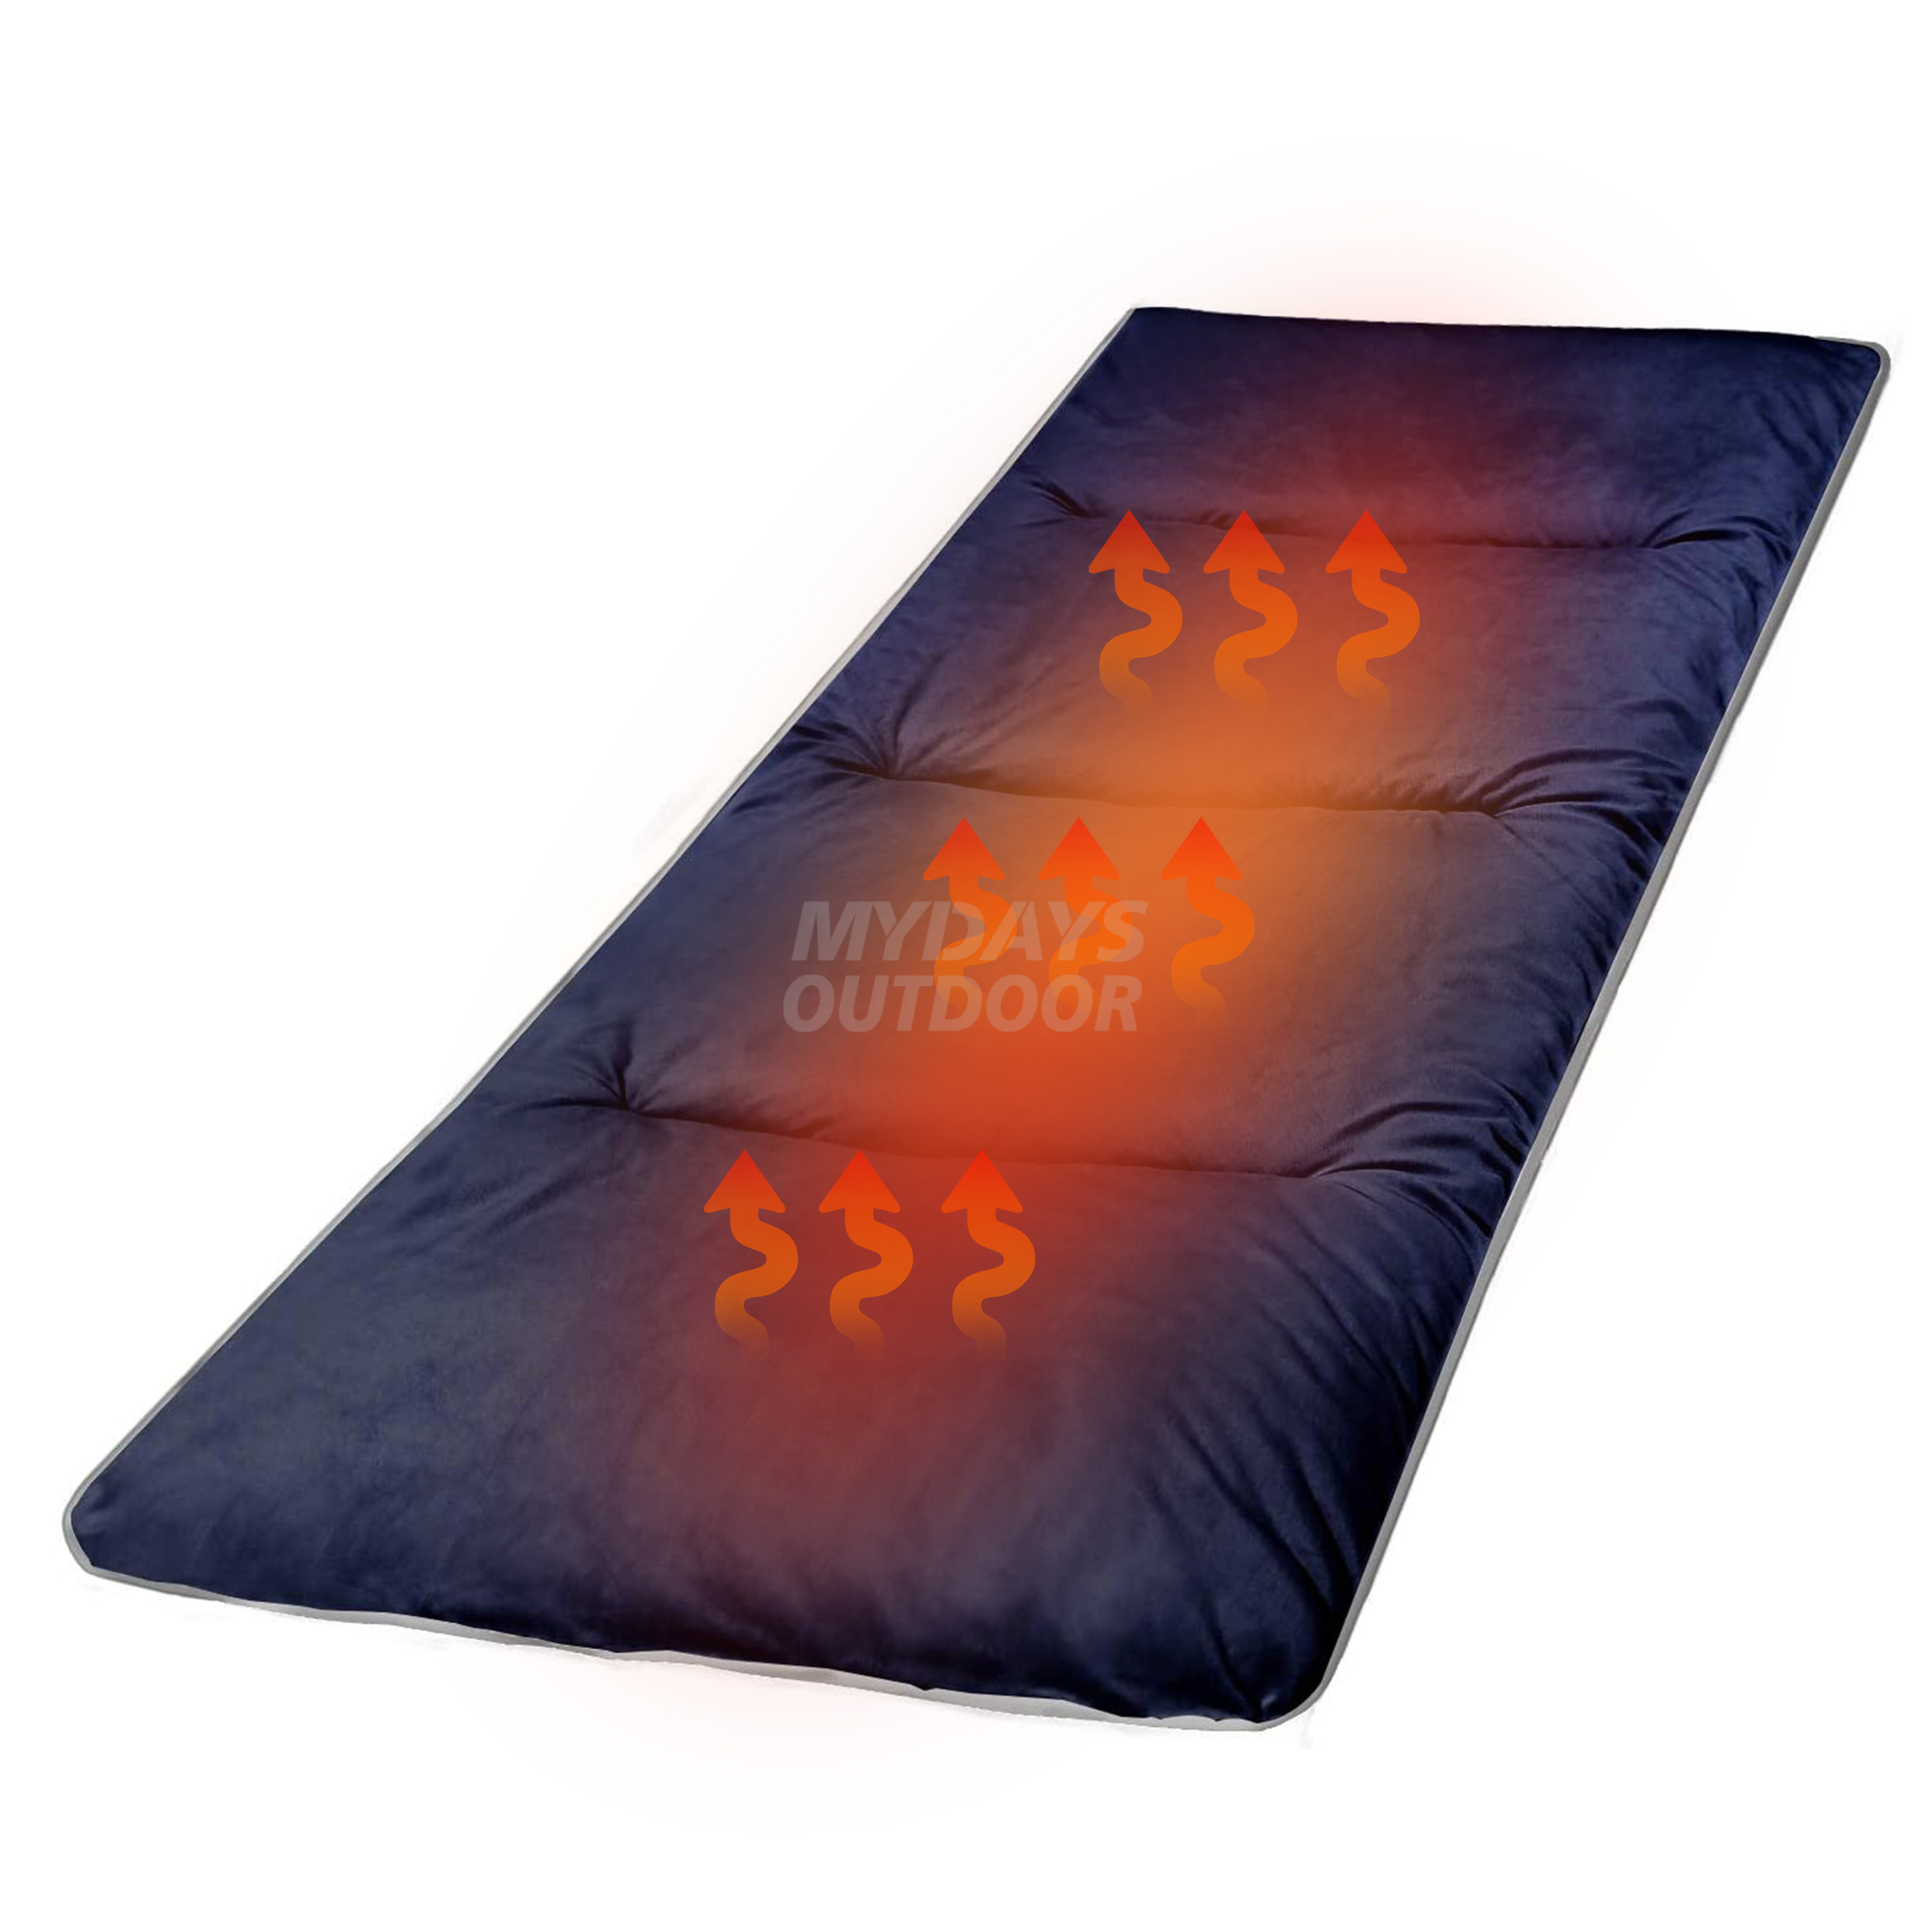 Almohadillas para cuna de acampada, colchón para cuna de dormir de algodón suave y cómodo calentado, MDSCM-30